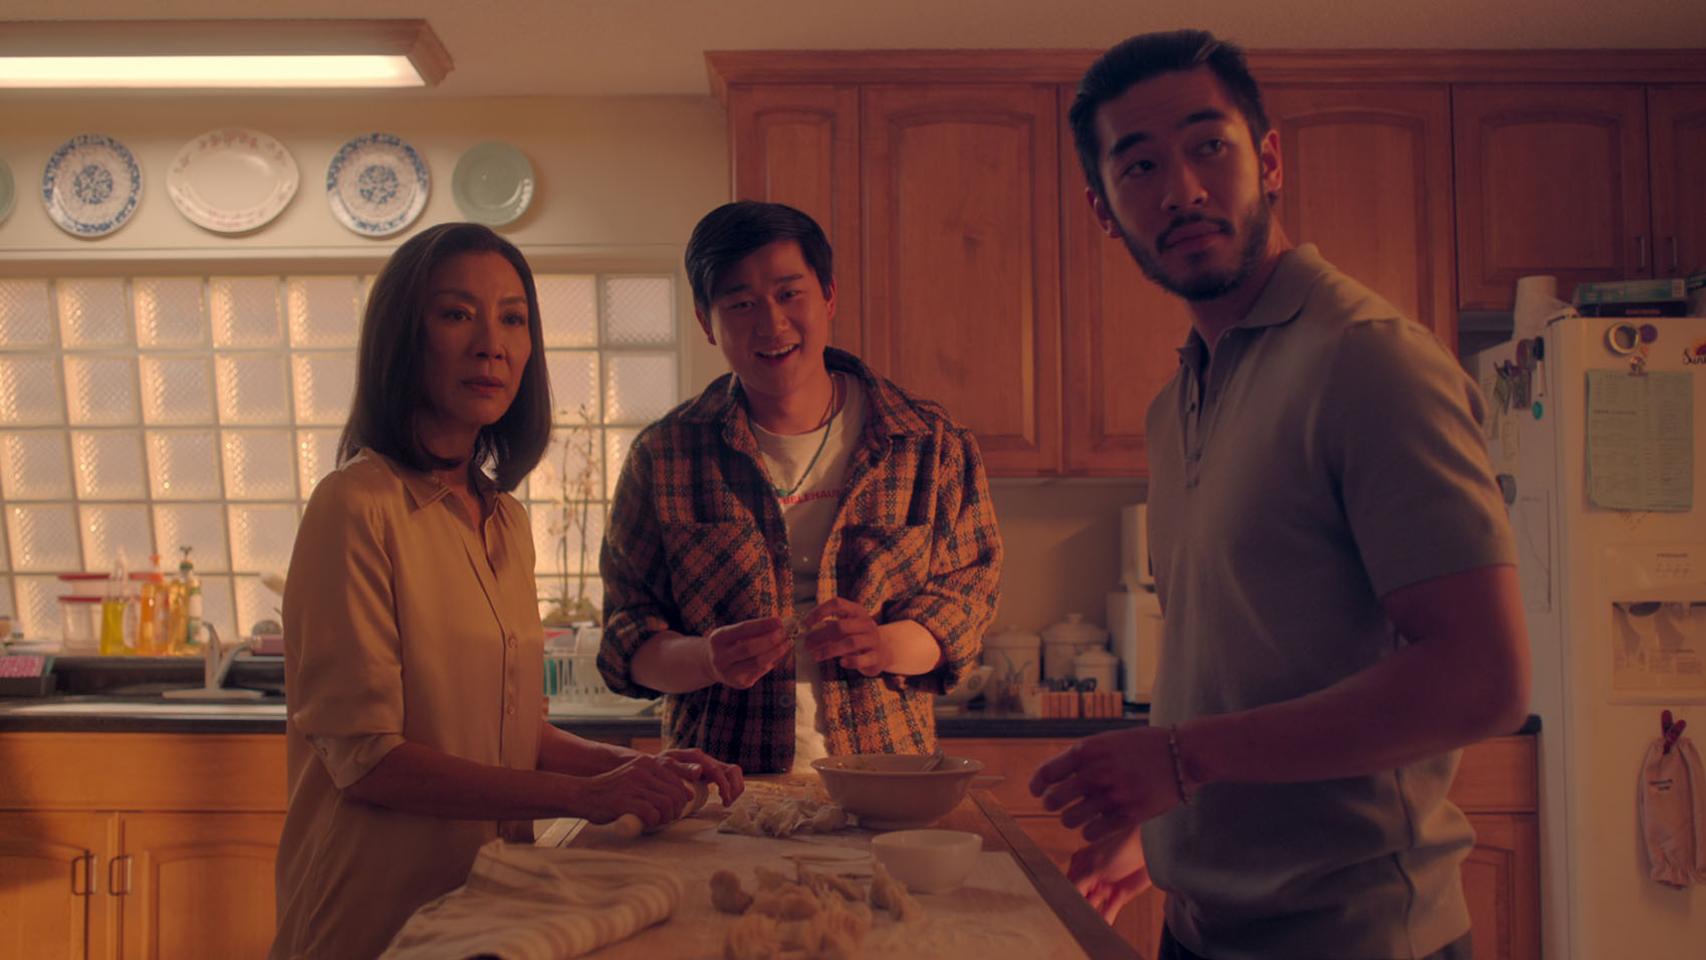 Michelle Yeoh es la matriarca de una familia de gángsters en 'Los hermanos Sun': así es la nueva serie de Netflix